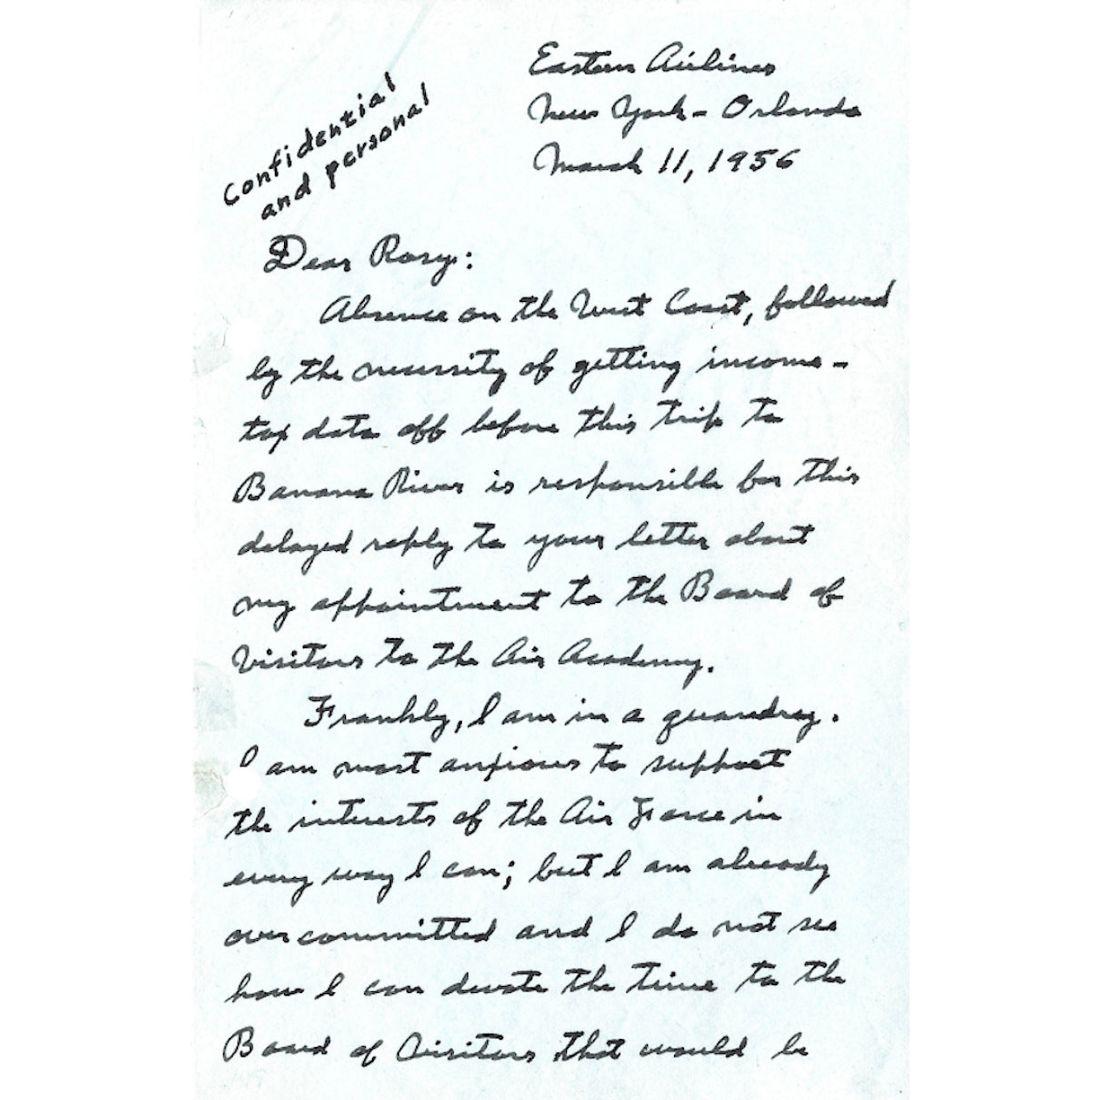 Ein aufschlussreicher handschriftlicher Brief, unterzeichnet von dem Flugpionier Charles Lindbergh (1902 - 1974). 

Das Schreiben umfasst fünf Seiten im Format 5,5